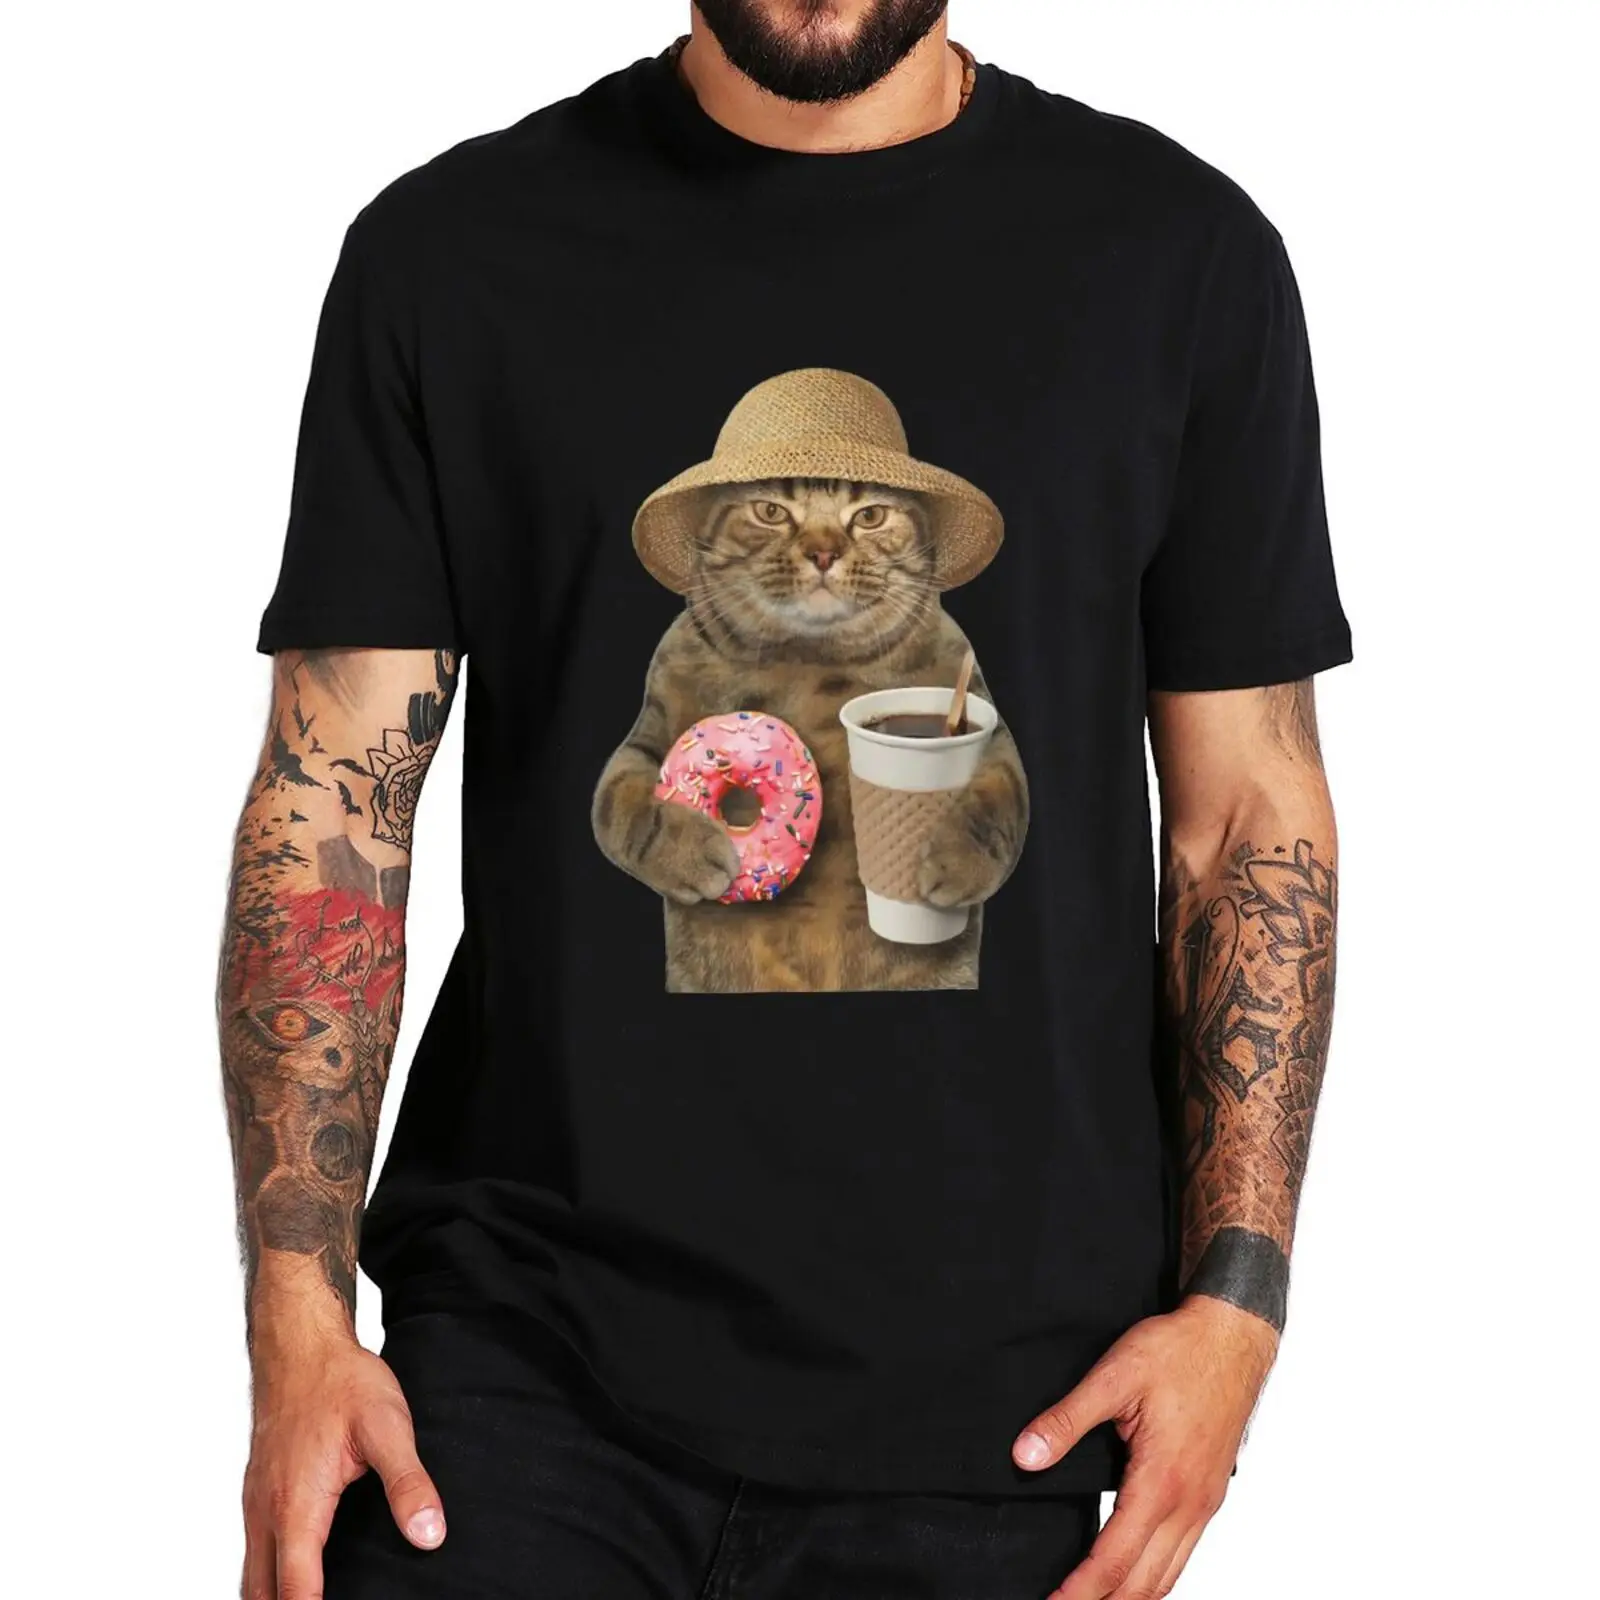 

Футболка с забавным котом с кофе и пончиками, милые подарочные футболки с животными, кошками для влюбленных, топы из 100% хлопка, мягкие футбол...